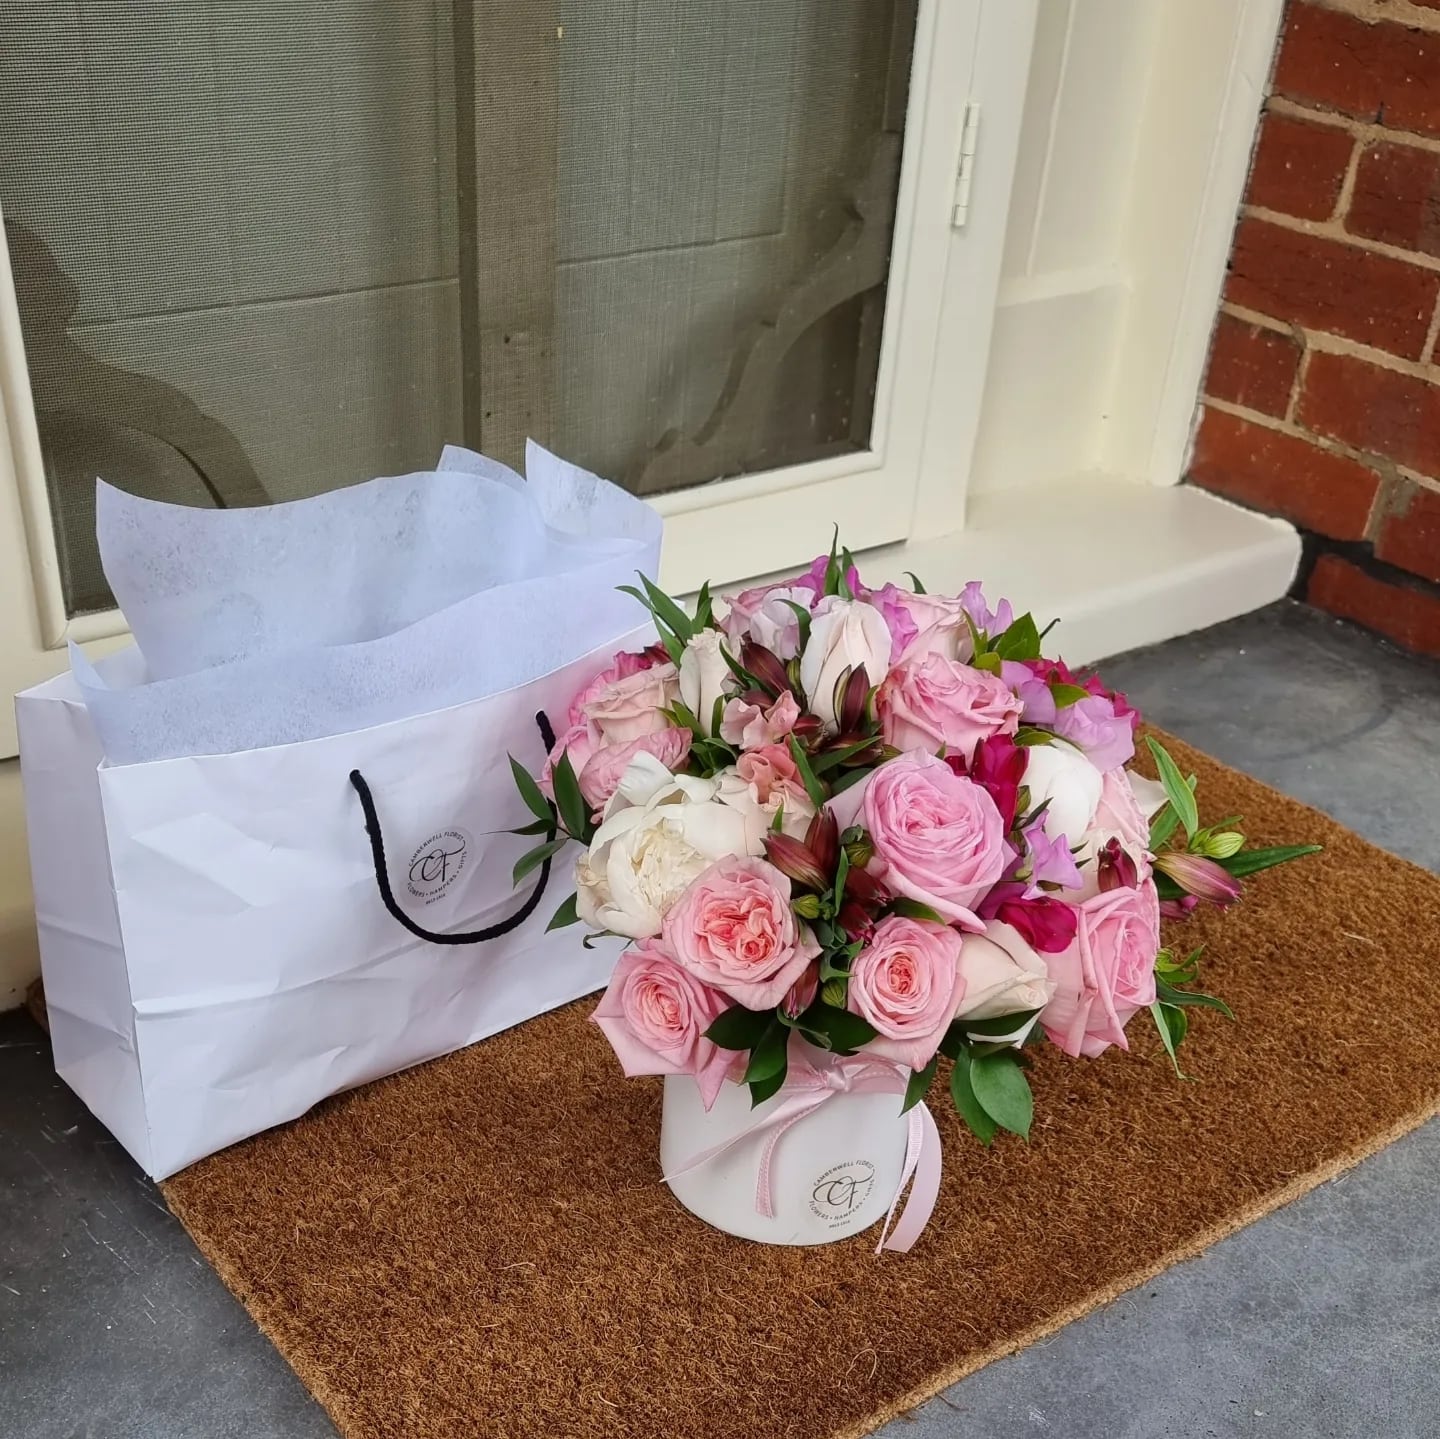 pink fragrant rose vase arrangement and gift delivered to front door